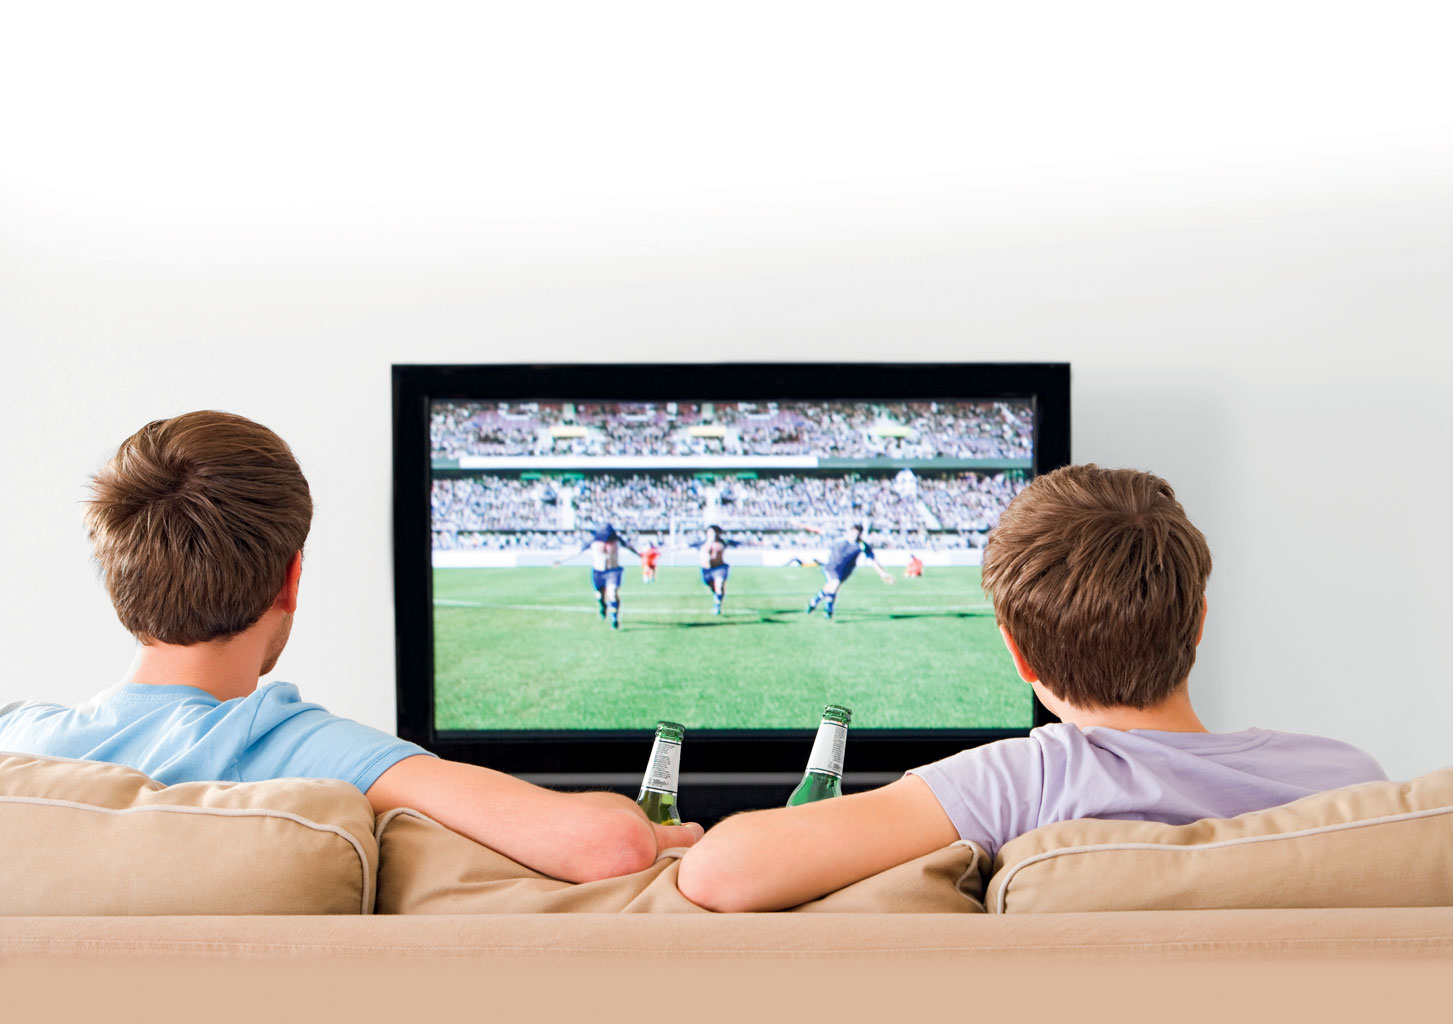 Watch a game it is. Футбол по телеку. Спорт по ТВ. Люди смотрят футбол по телевизору. Футбольный матч в телевизоре.